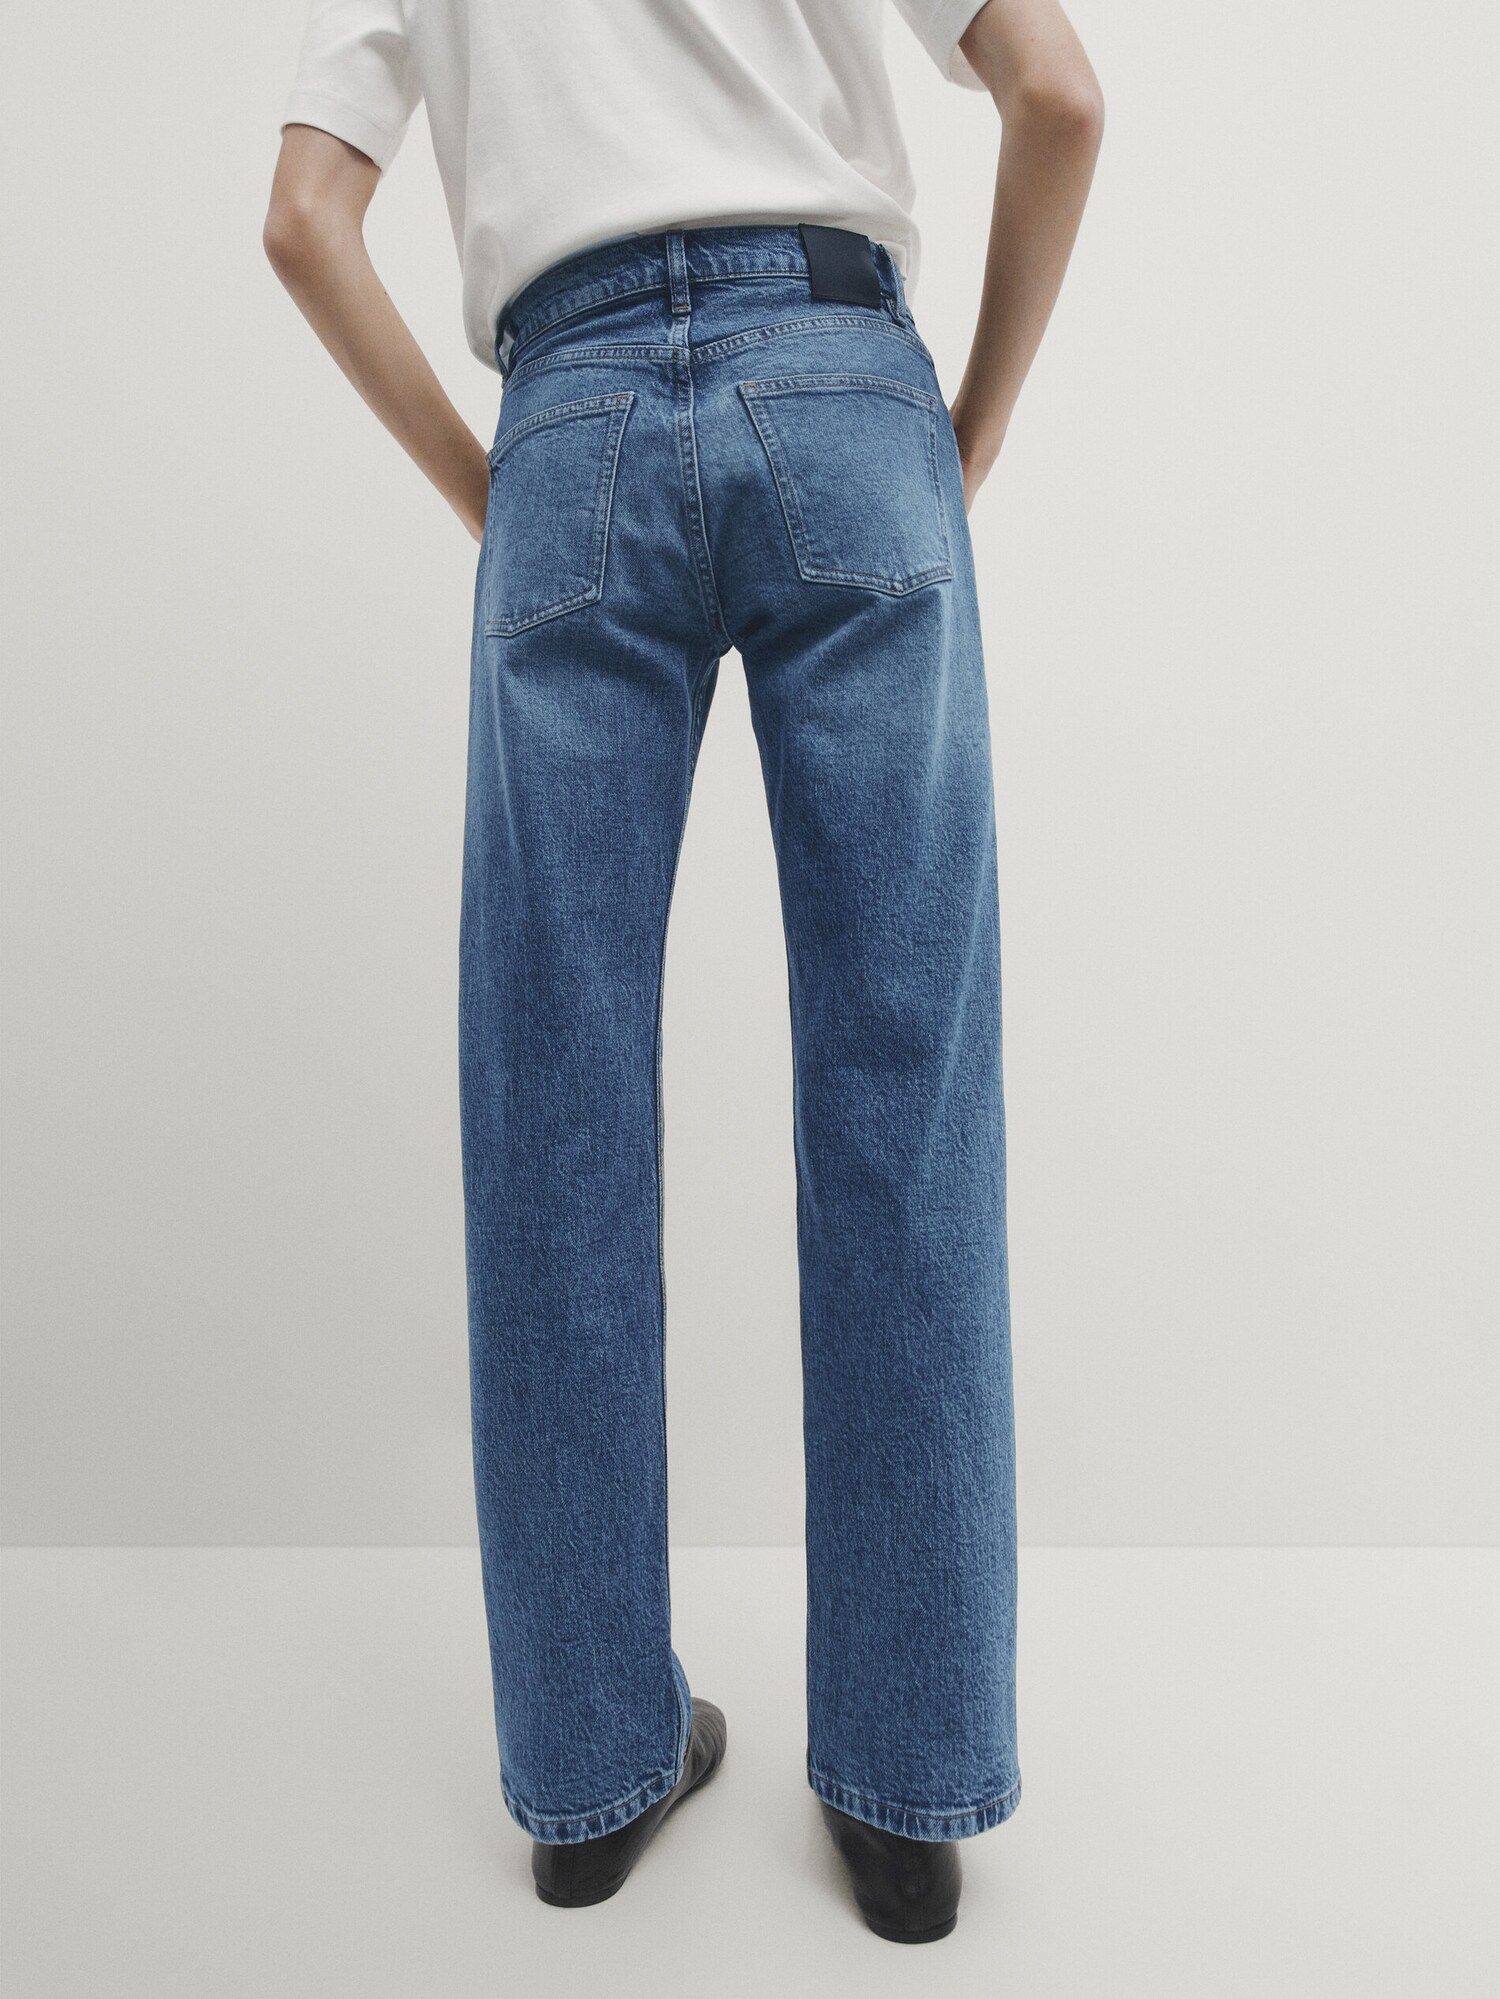 Bequeme Jeans mit geradem Schnitt und halbhohem Bund | Massimo Dutti DE